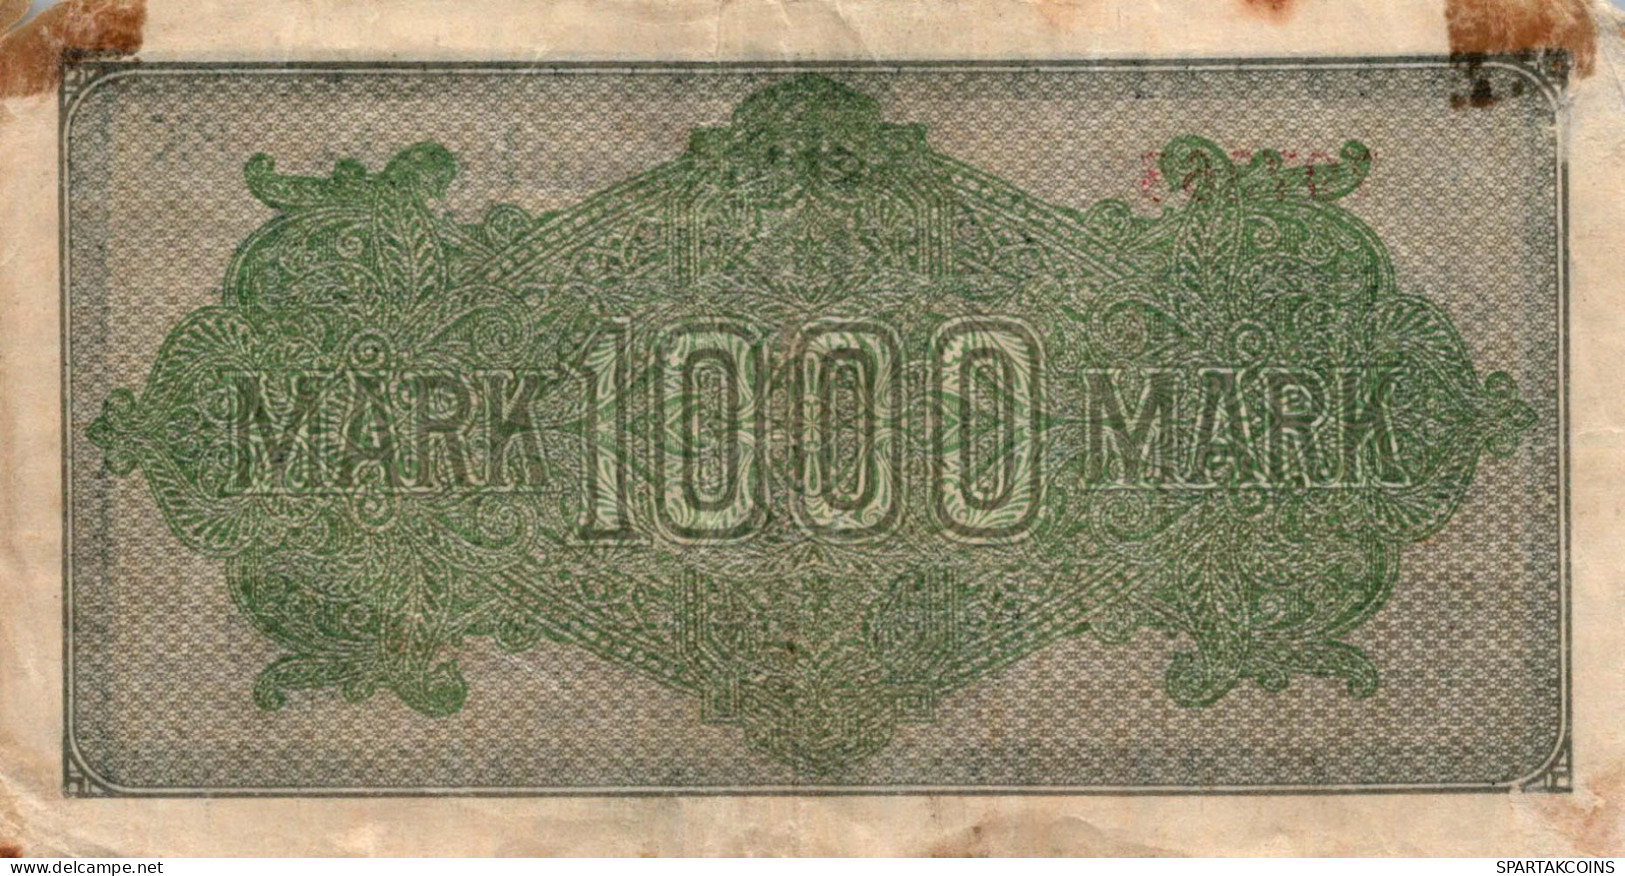 1000 MARK 1922 Stadt BERLIN DEUTSCHLAND Papiergeld Banknote #PL040 - [11] Emisiones Locales